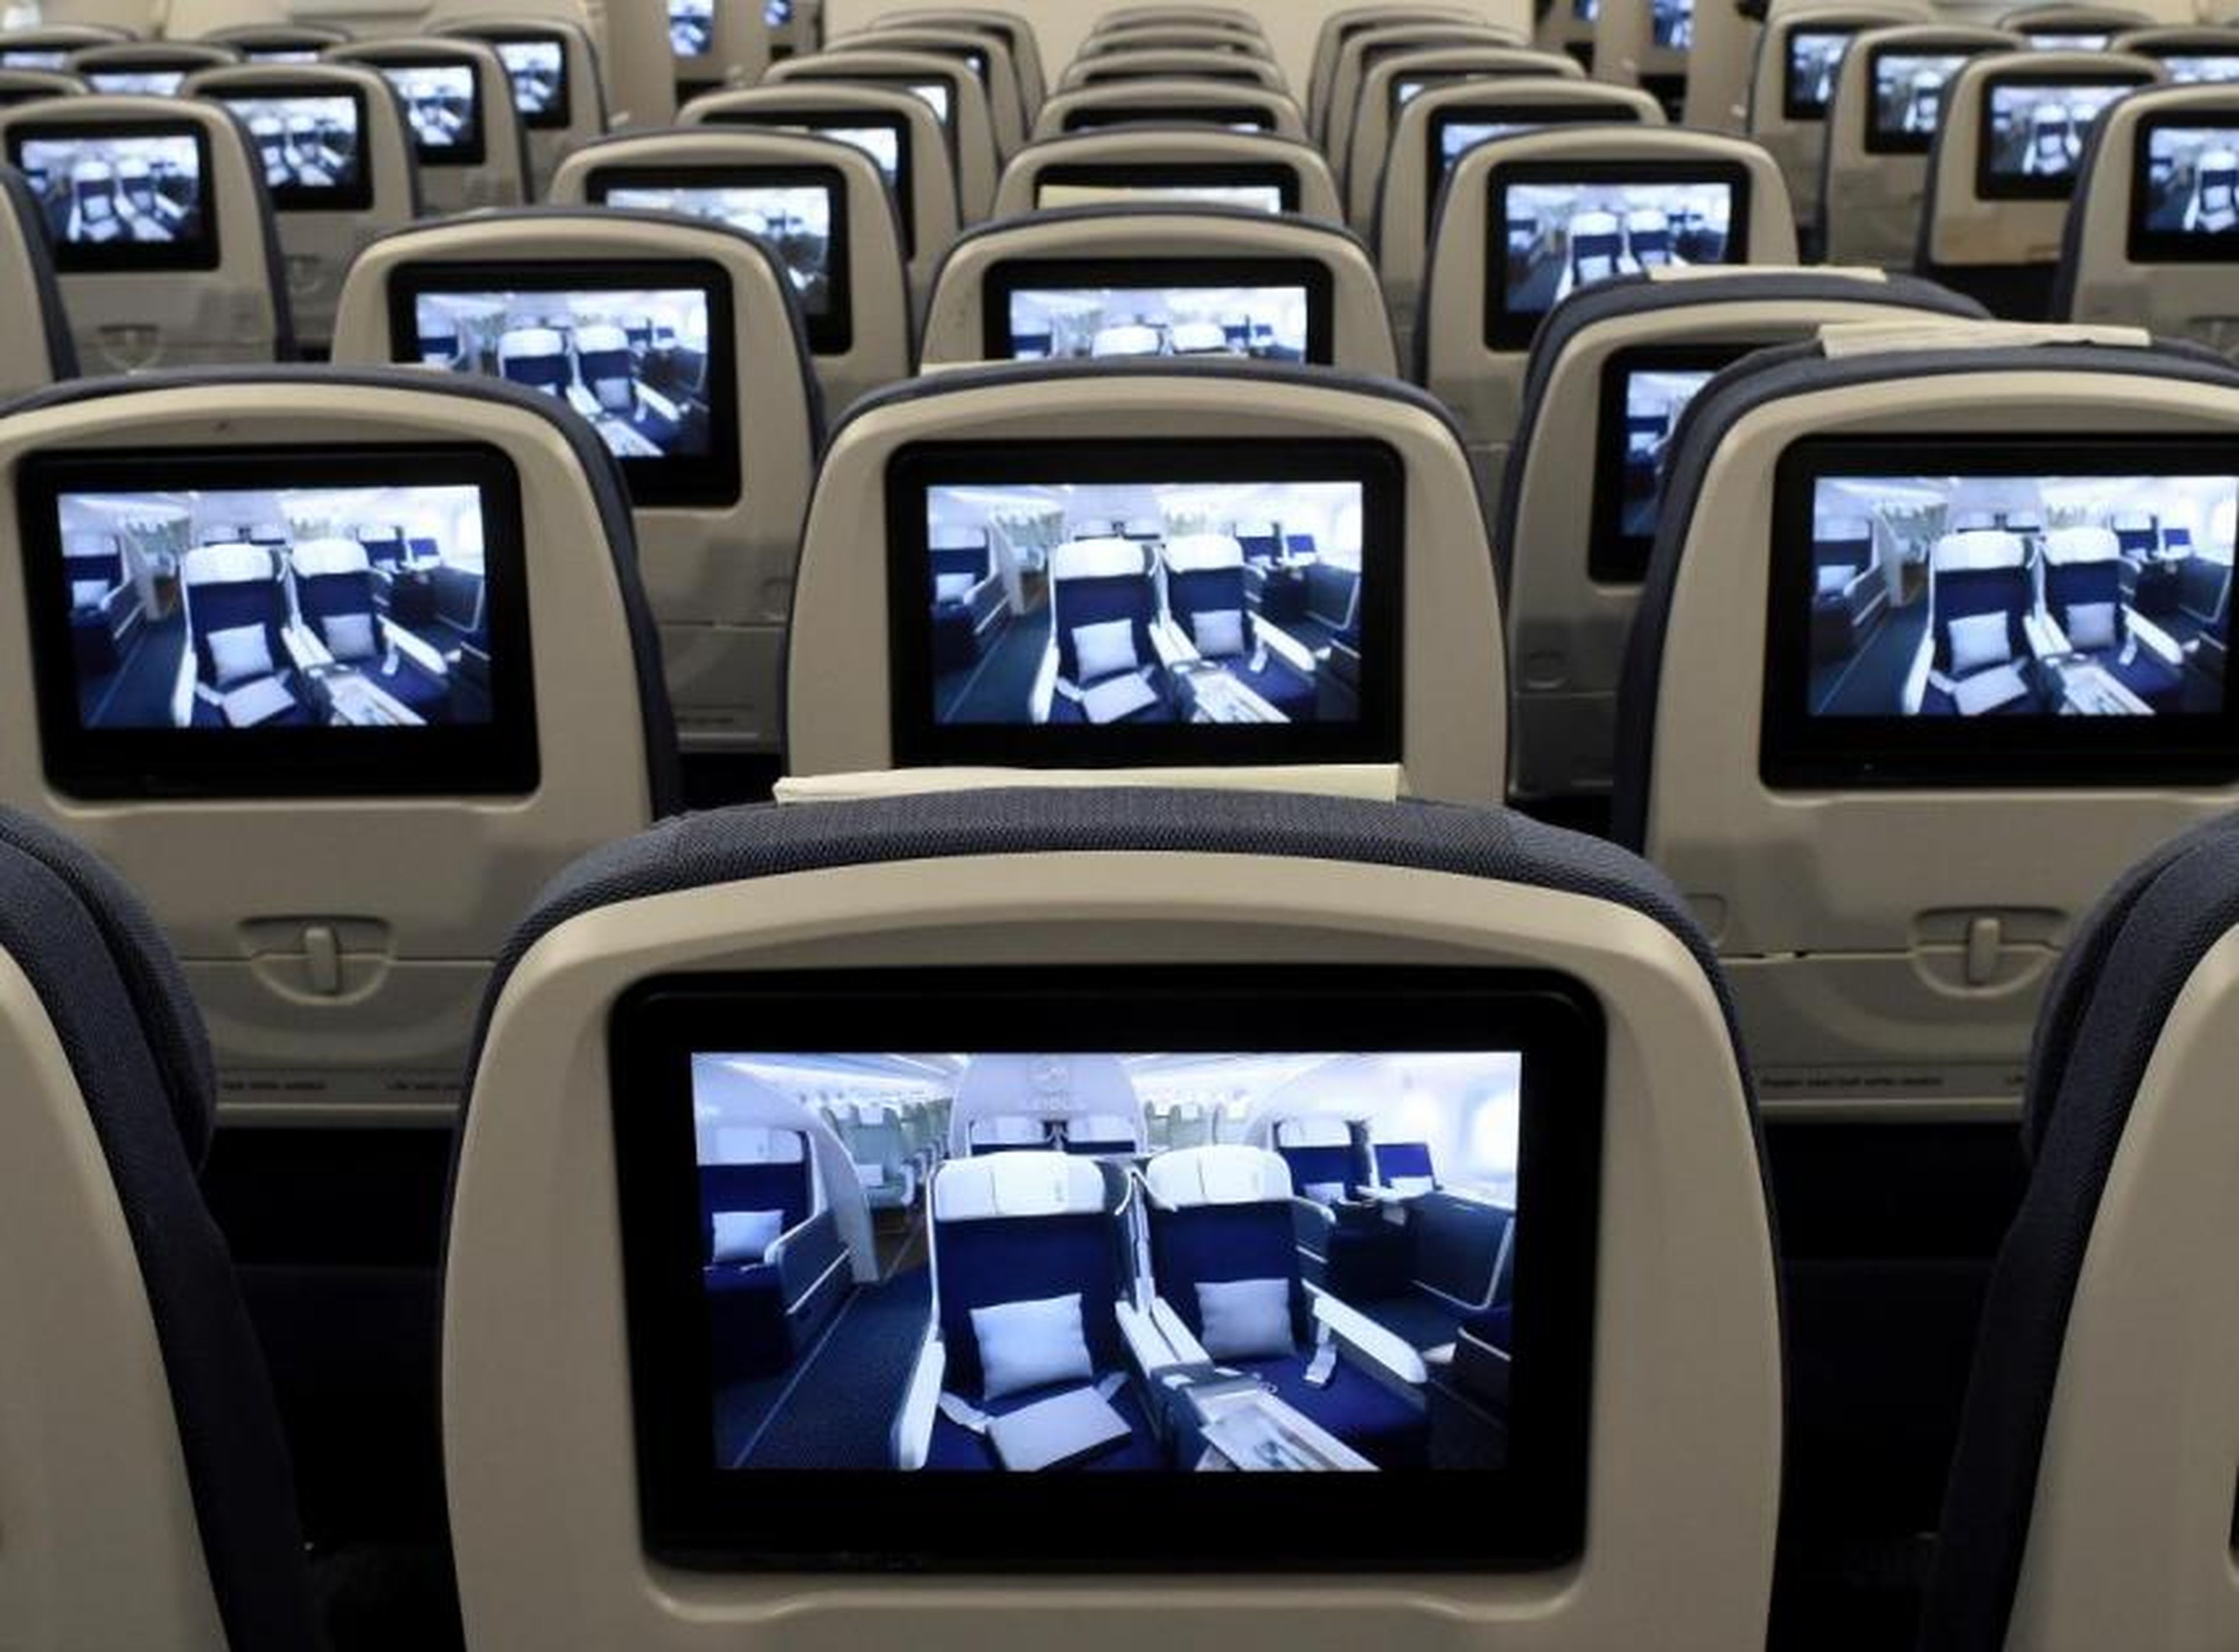 Pantallas de televisión instaladas a bordo de un avión Airbus A350 XWB en pruebas de vuelo.